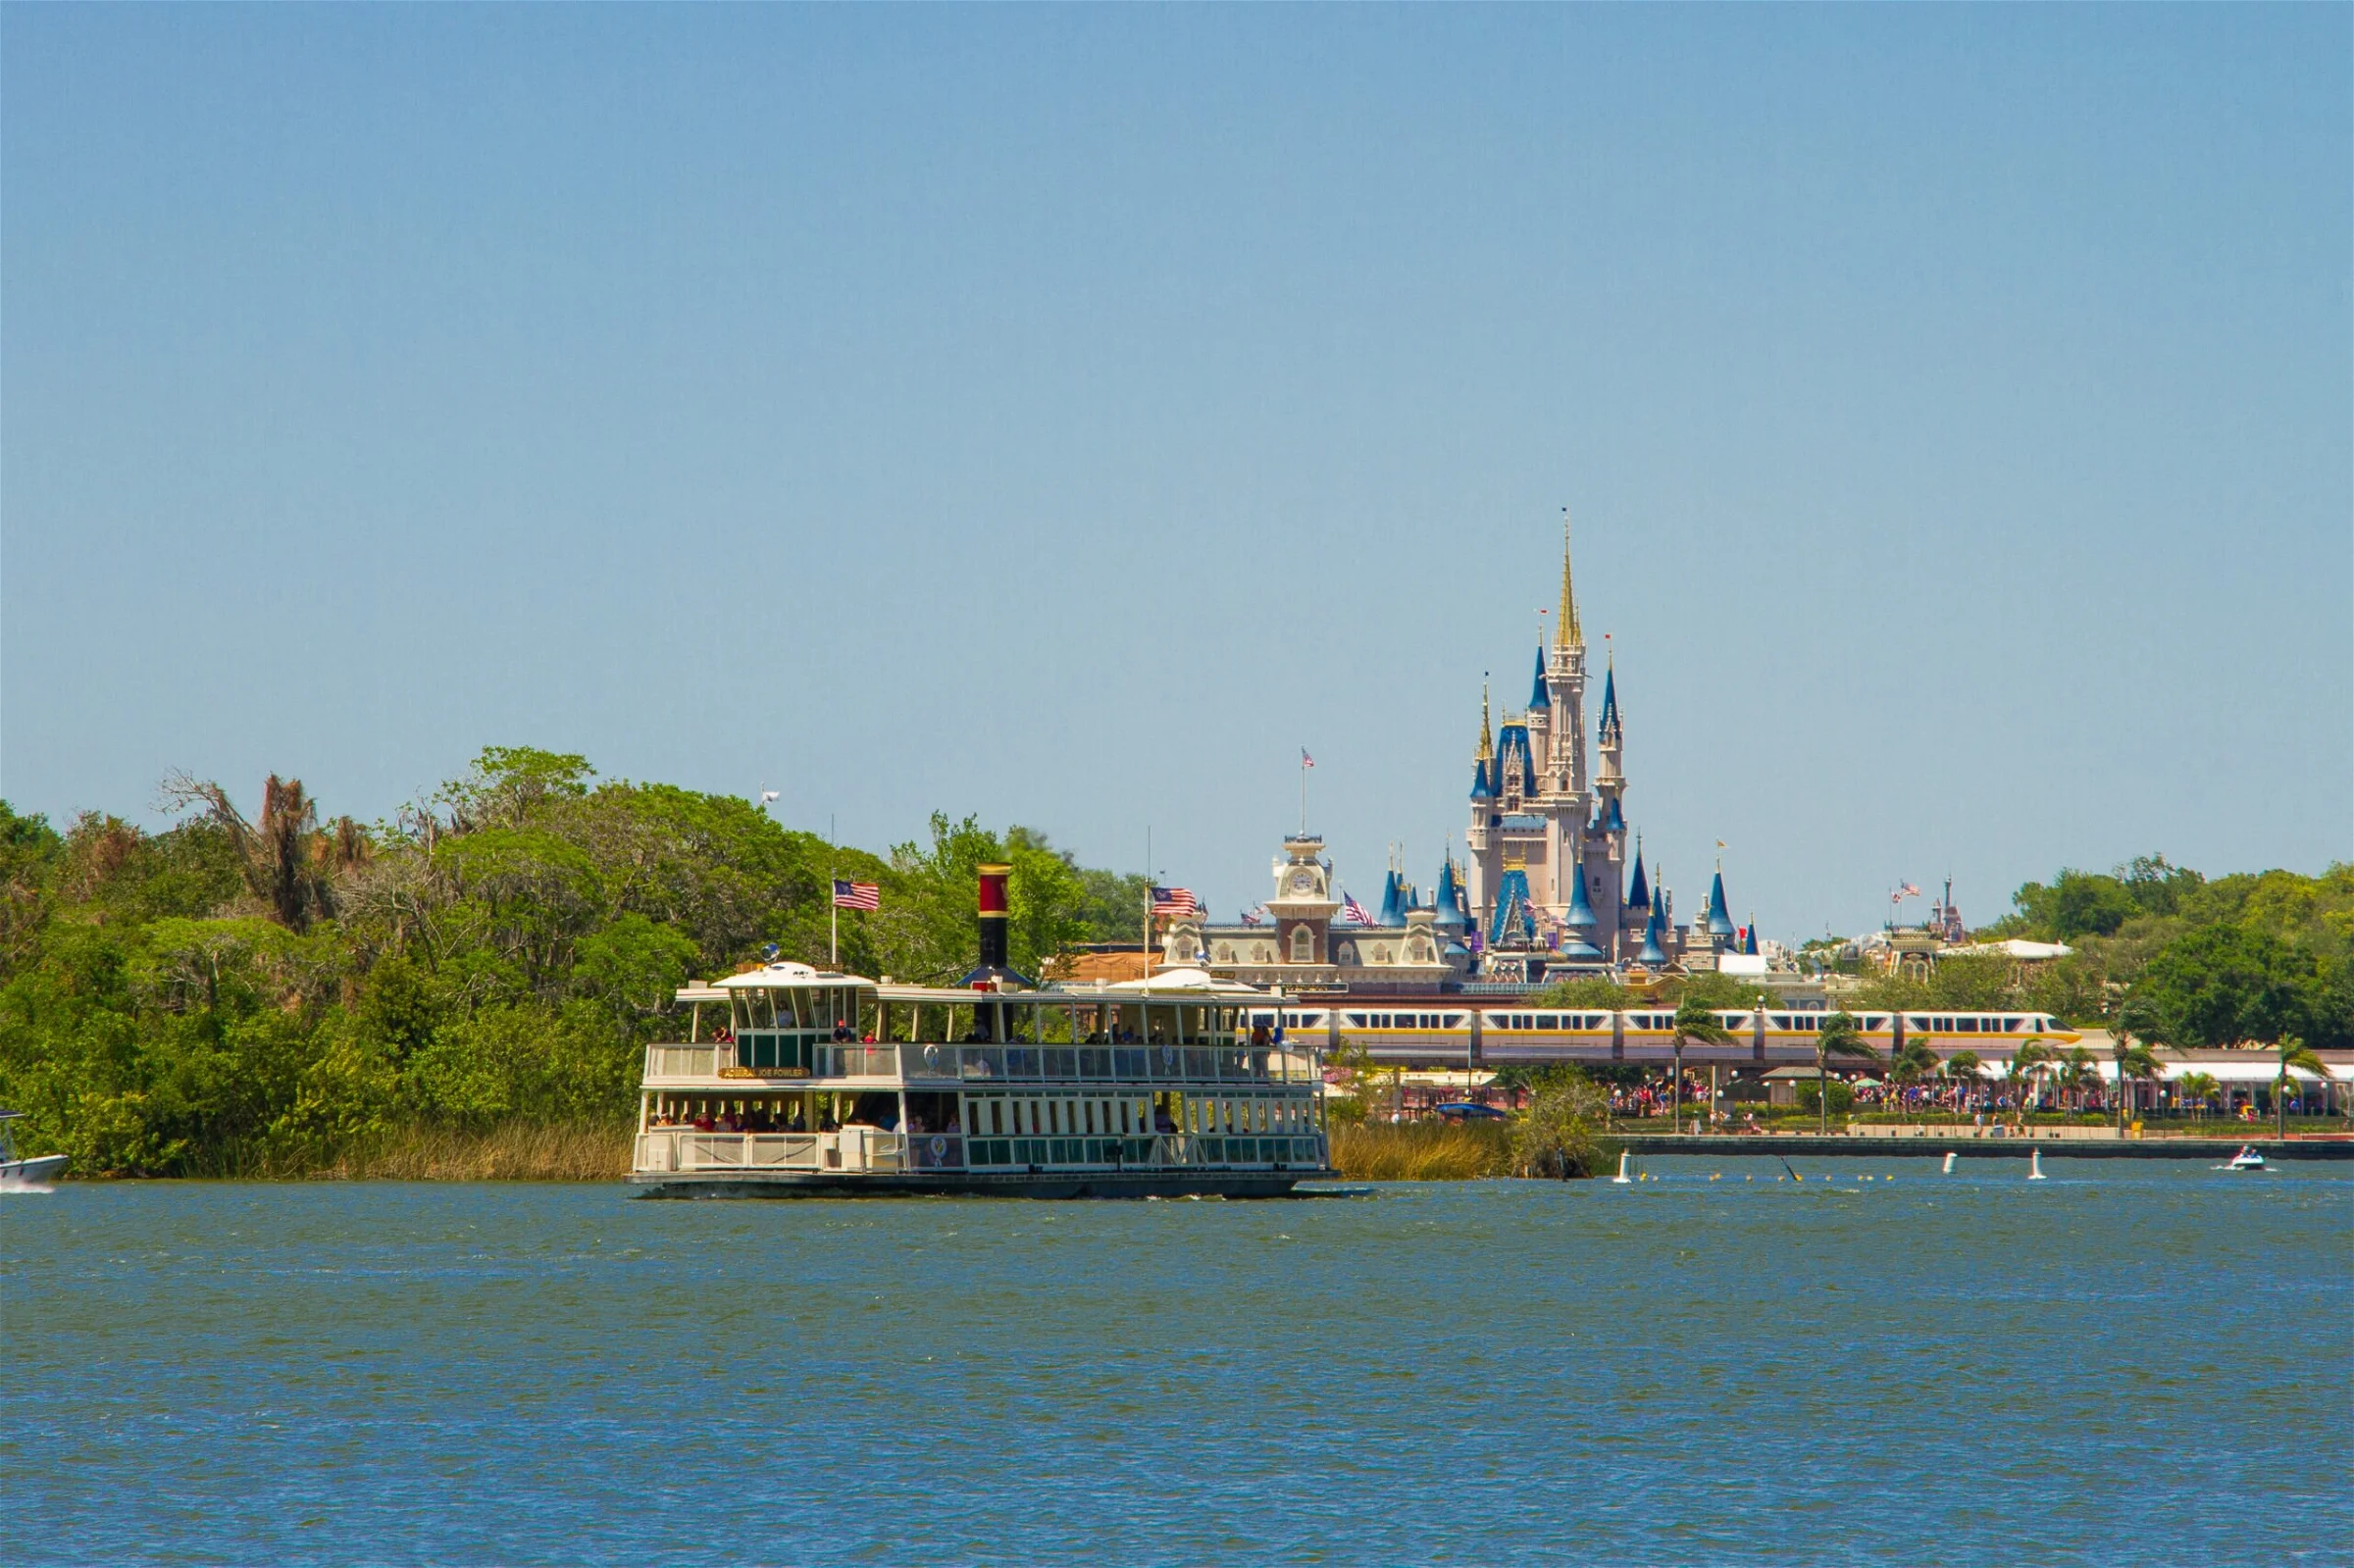 ferry headed towards Orlando's Disney World